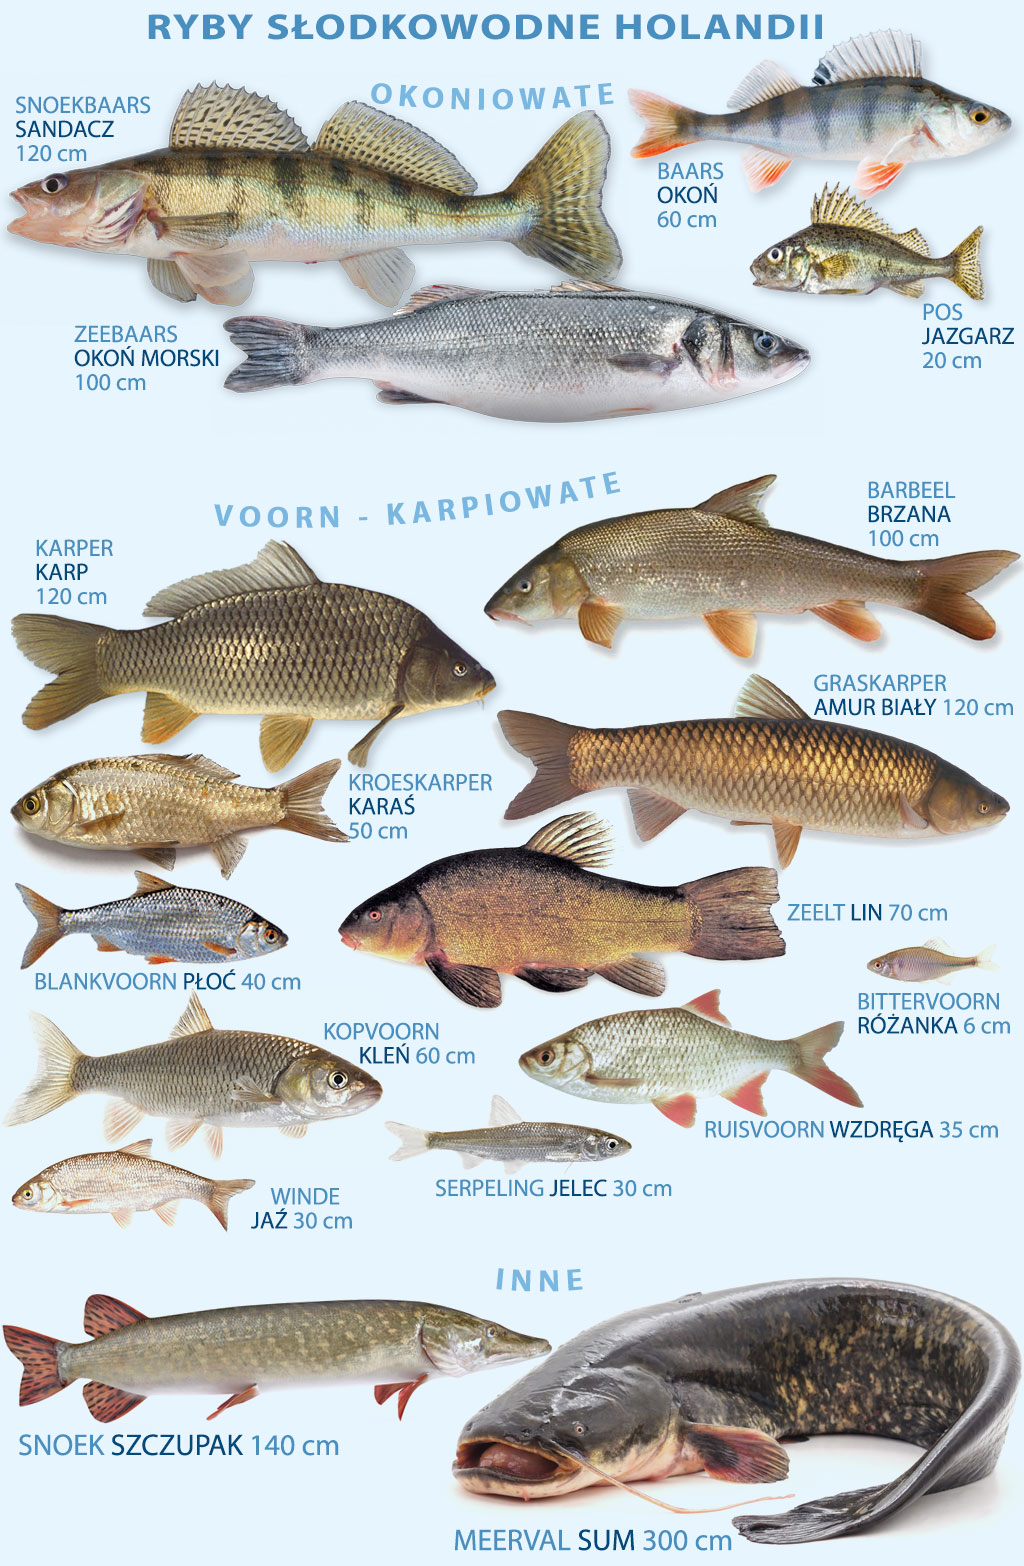 Najpowszechniejsze ryby słodkowodne w Holandii